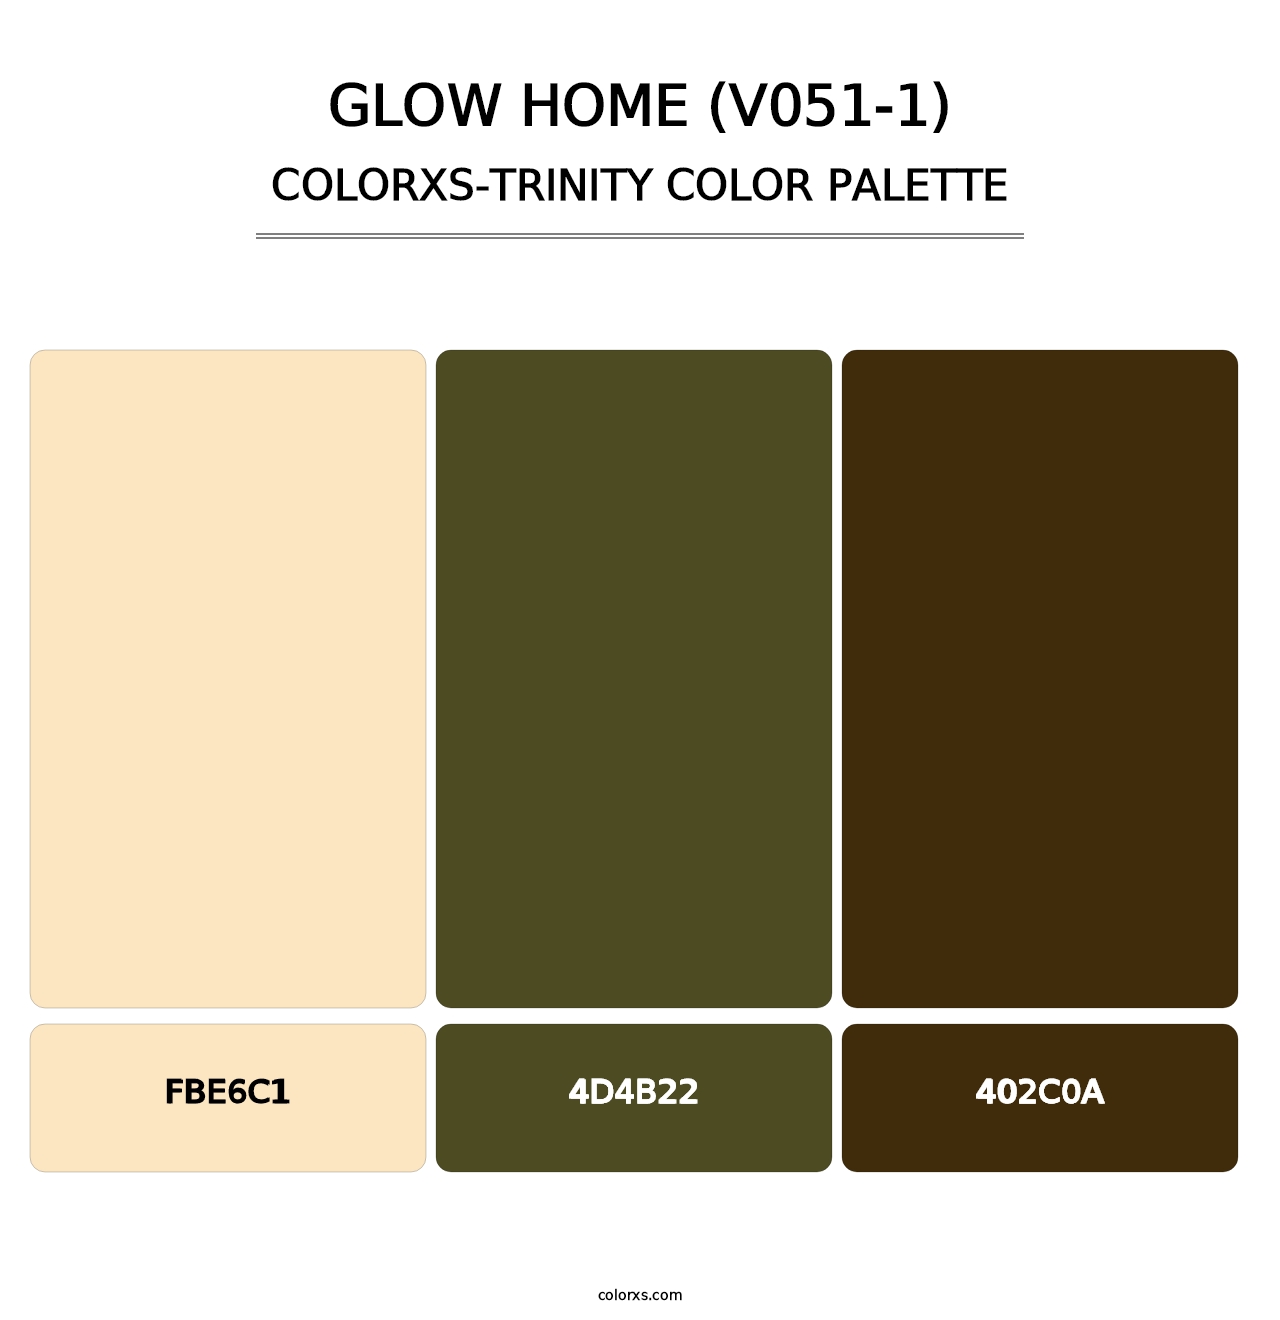 Glow Home (V051-1) - Colorxs Trinity Palette